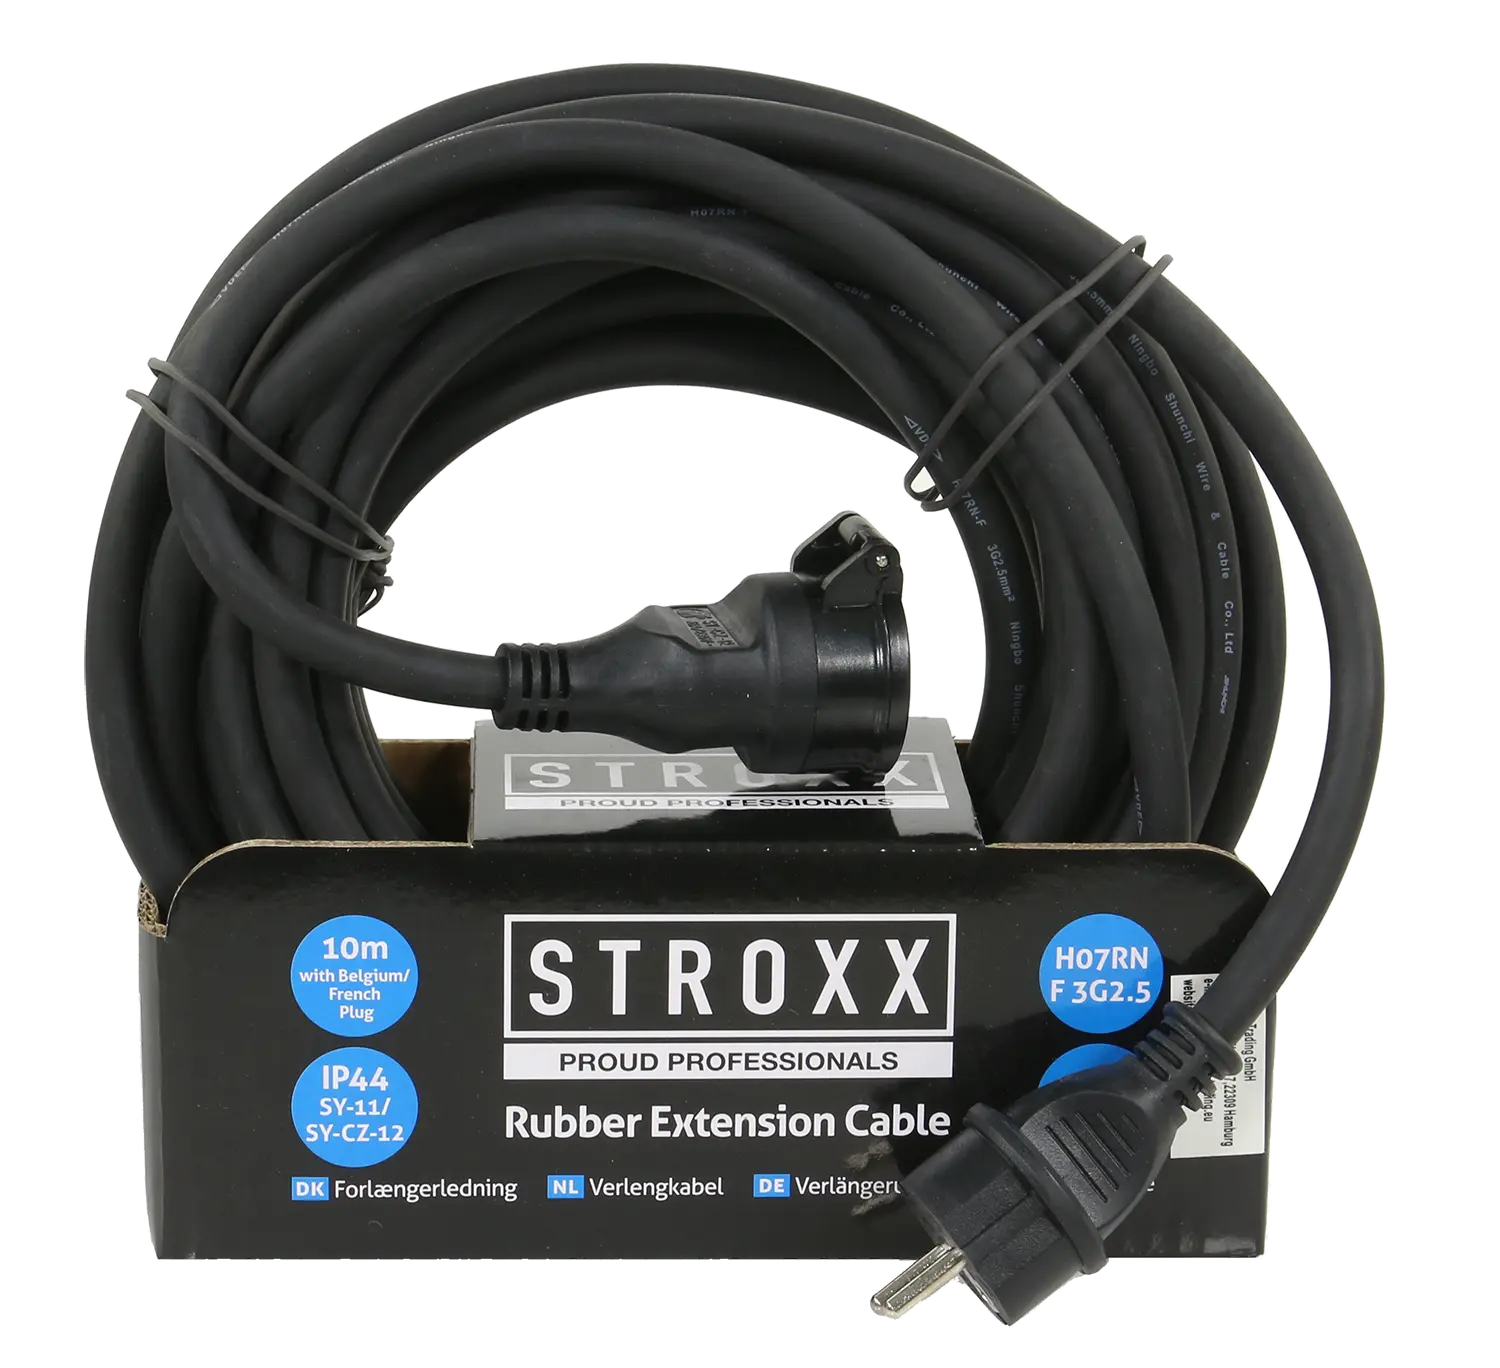 Zwarte STROXX Verlengkabel met klep van 10m. In kartonnen verpakking.